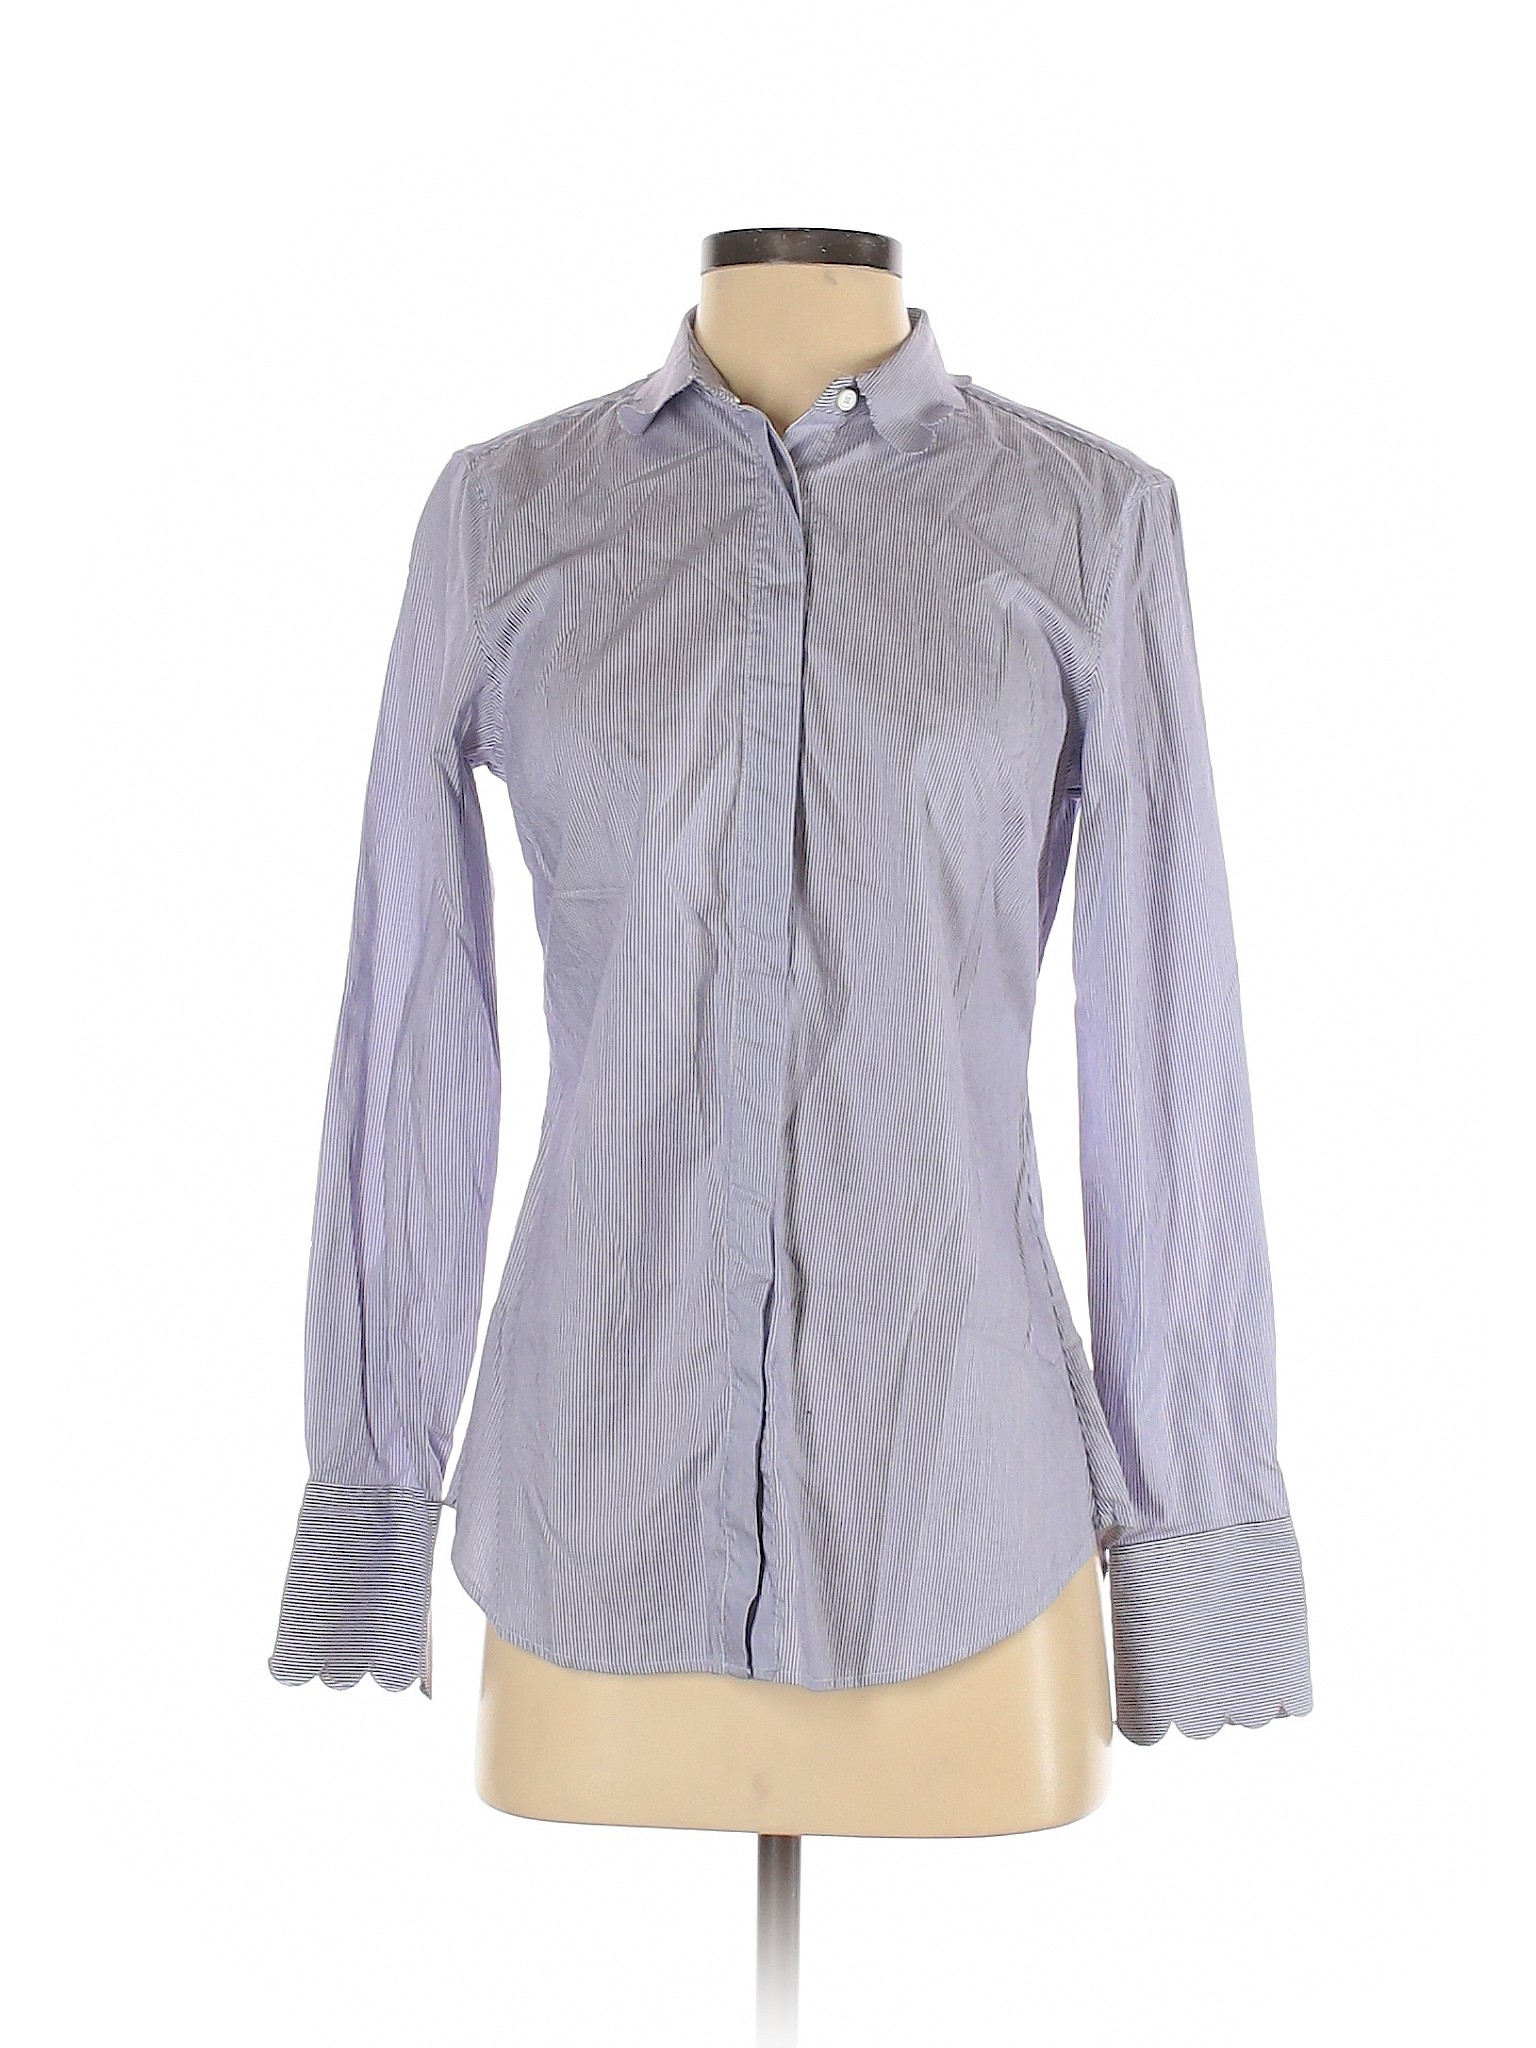 Banana Republic Women Purple Long Sleeve Button-Down Shirt 4 | eBay